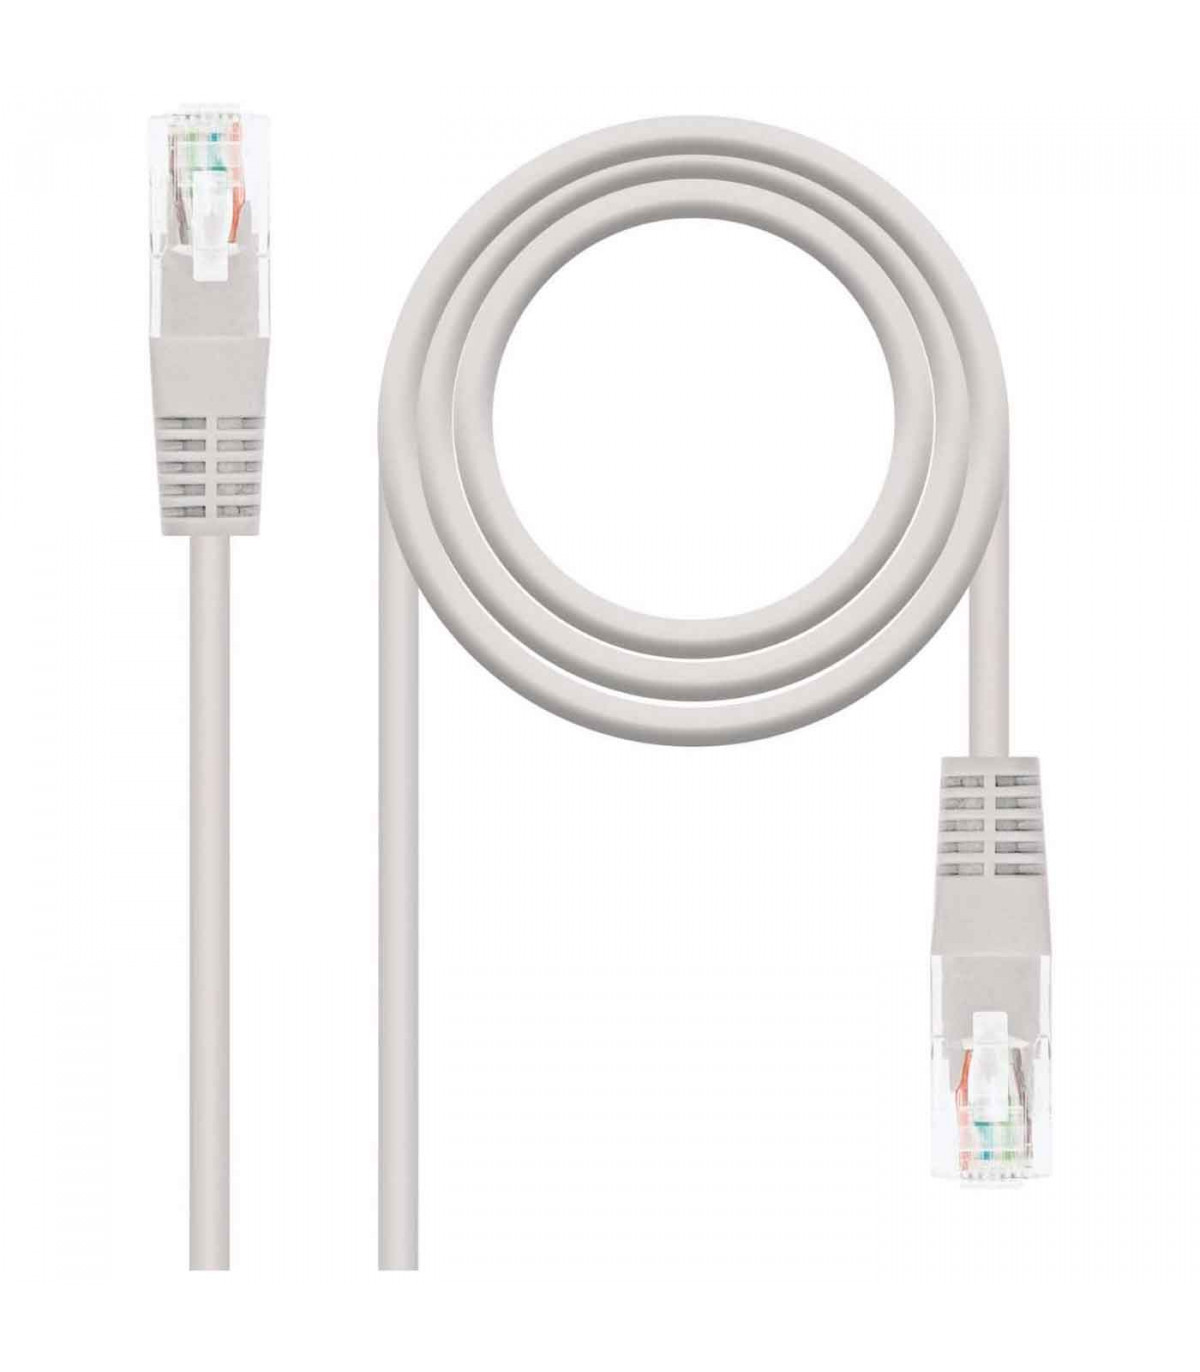 Tradineur - Cable de red Ethernet RJ45 - Fabricado en plástico y